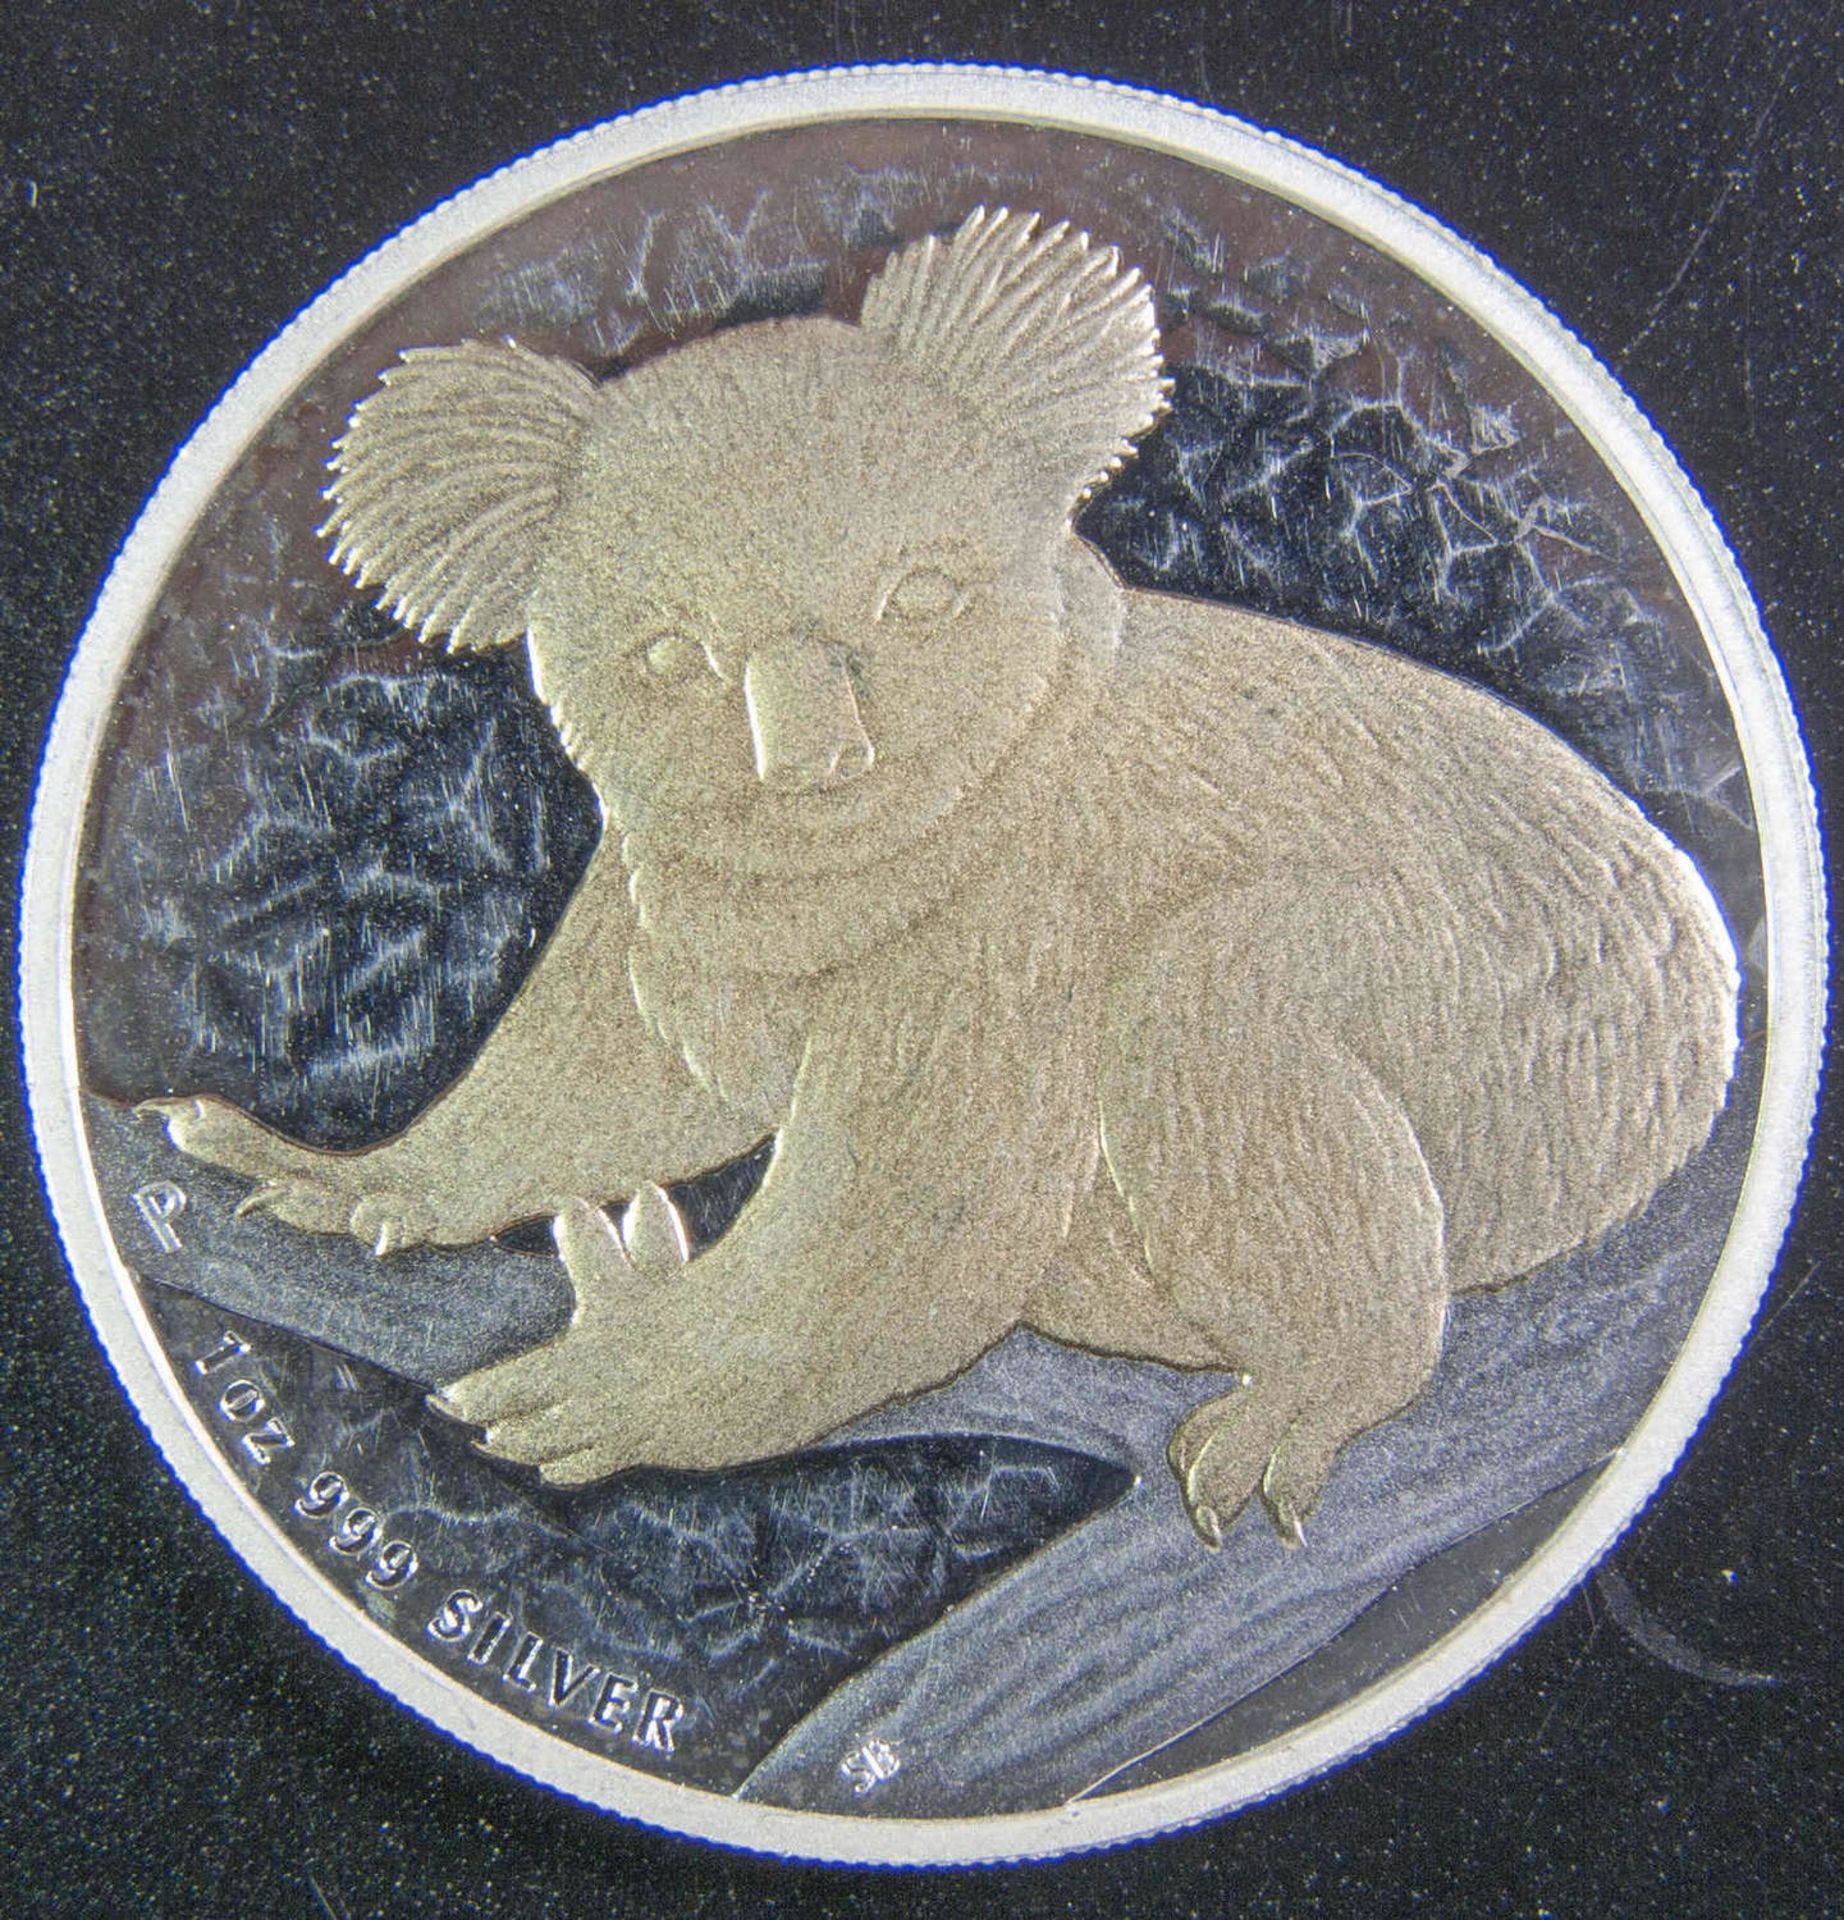 Australien 2009, 1 Dollar - Silbermünze, Koala, vergoldet. Gewicht: 1 oz. Silber 999. Erhaltung: